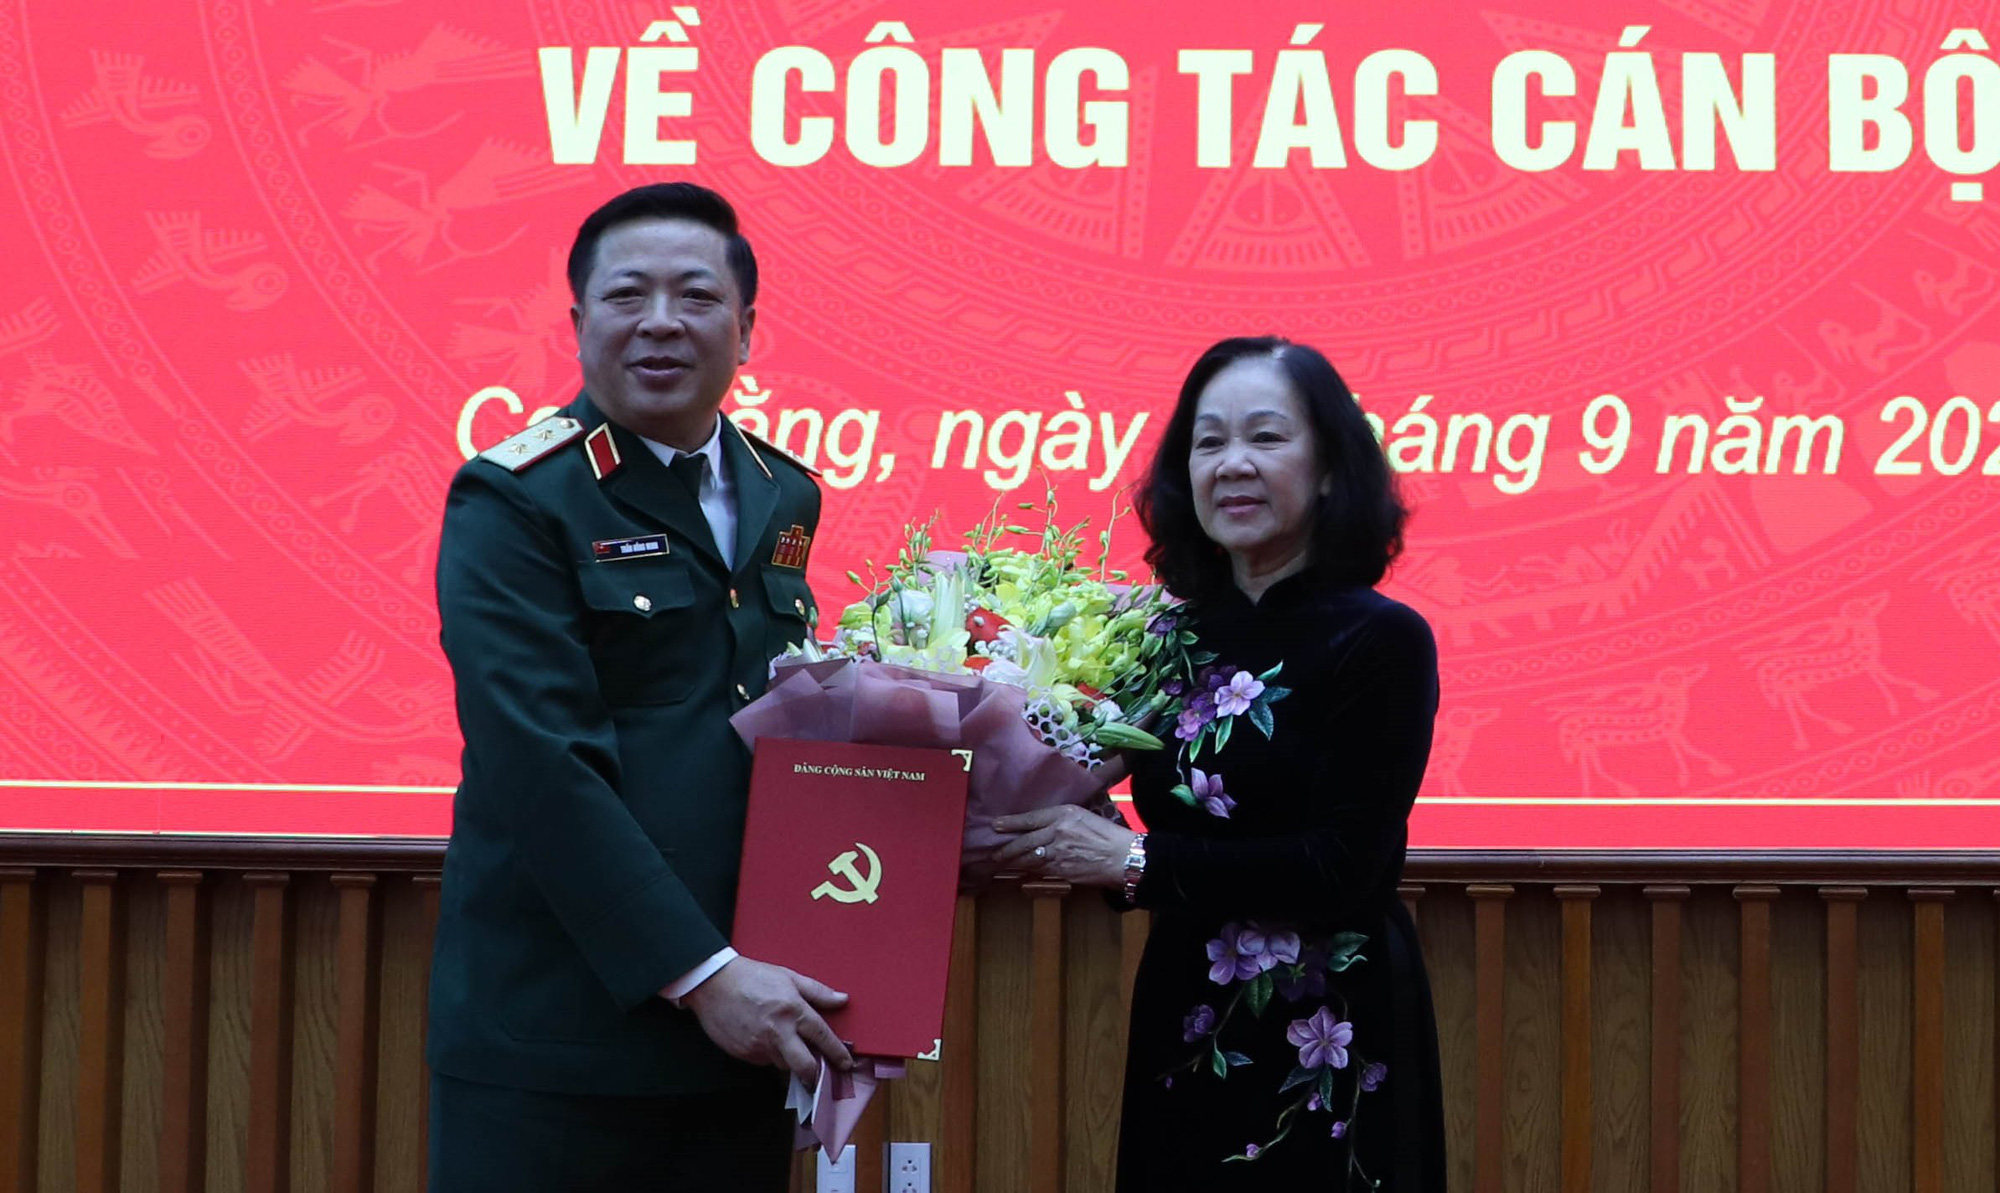 Bộ Chính trị điều động Trung tướng Trần Hồng Minh giữ chức Bí thư Tỉnh ủy Cao Bằng - Ảnh 1.